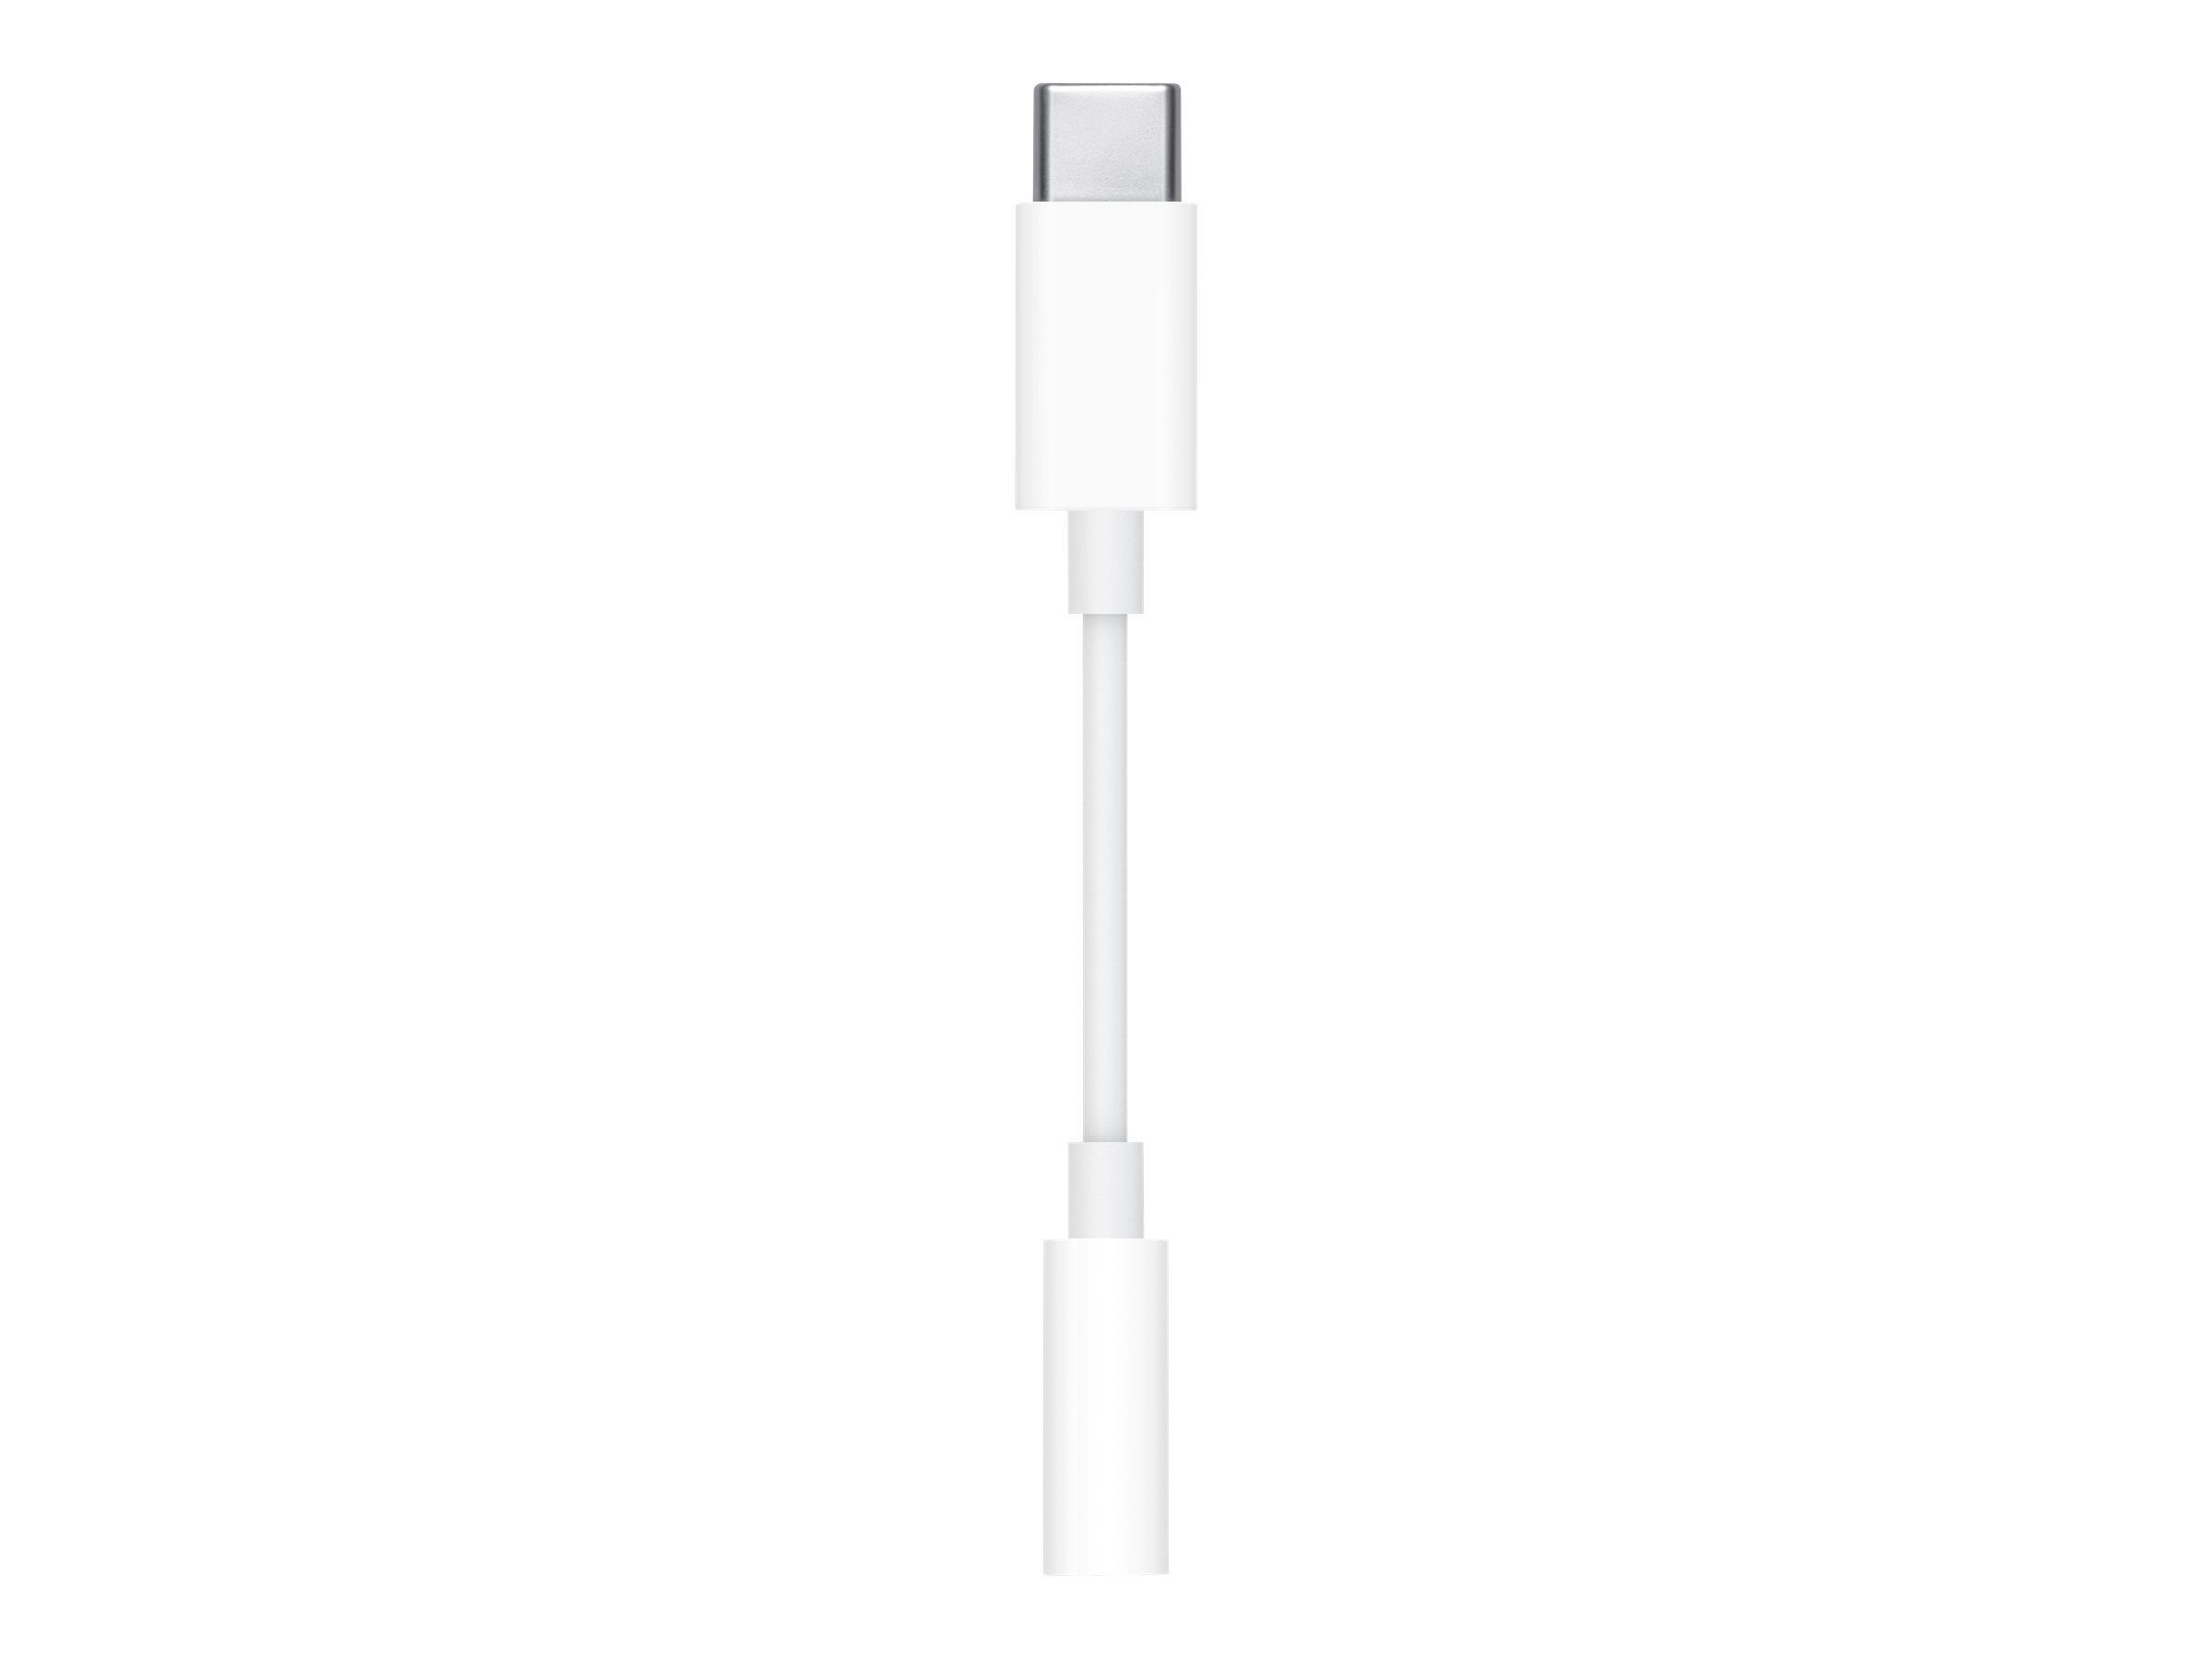 Apple USB-C to 3.5 mm Headphone Jack Adapter - Adapter USB-C auf Klinkenstecker - USB-C männlich zu Stereo Mini-Klinkenstecker weiblich - für 10.9-inch iPad Air (4th generation)